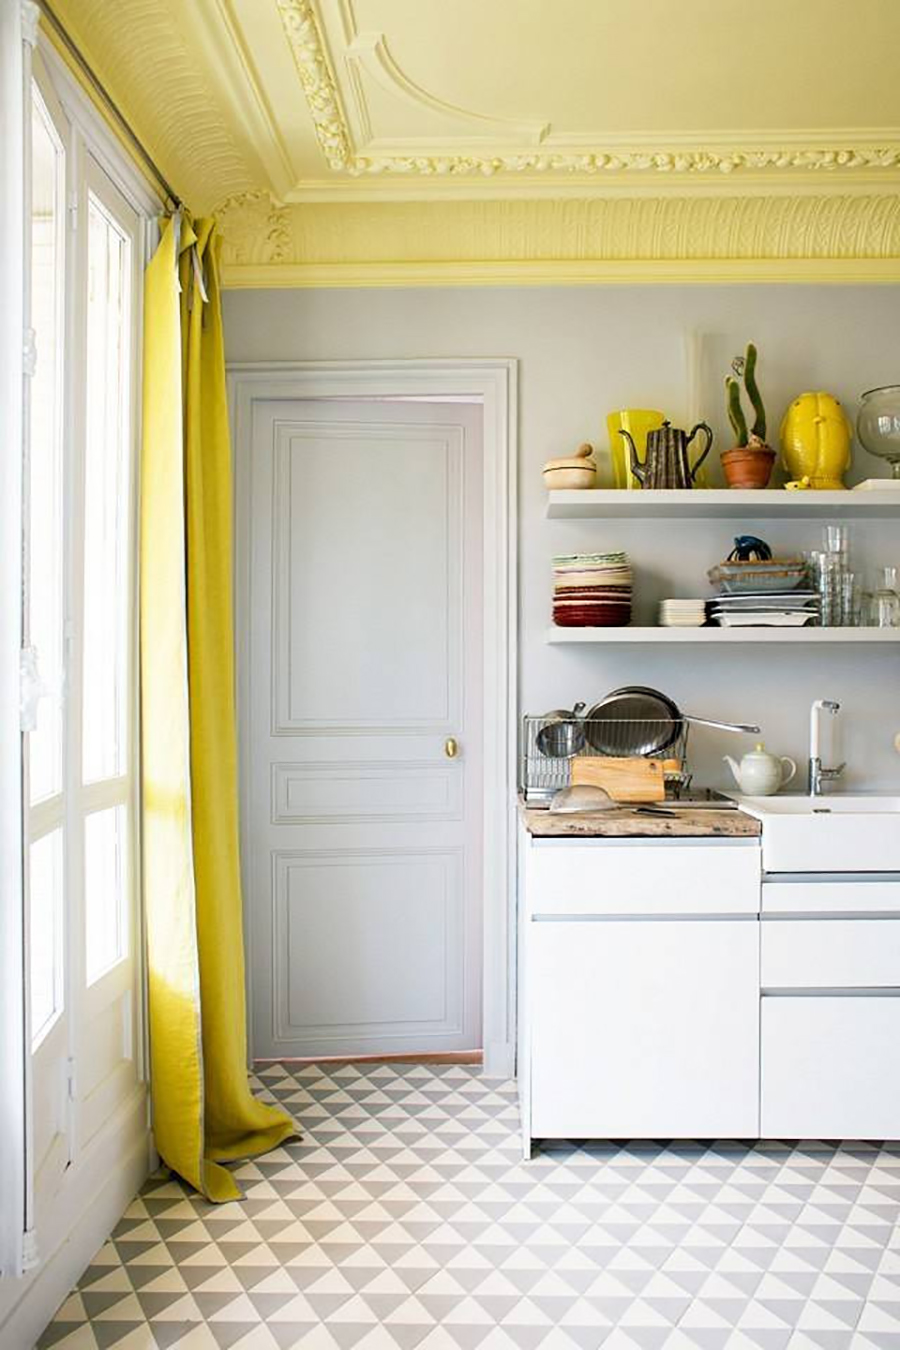 El techo de la cocina pintado color amarillo con muchos adornos de molduras